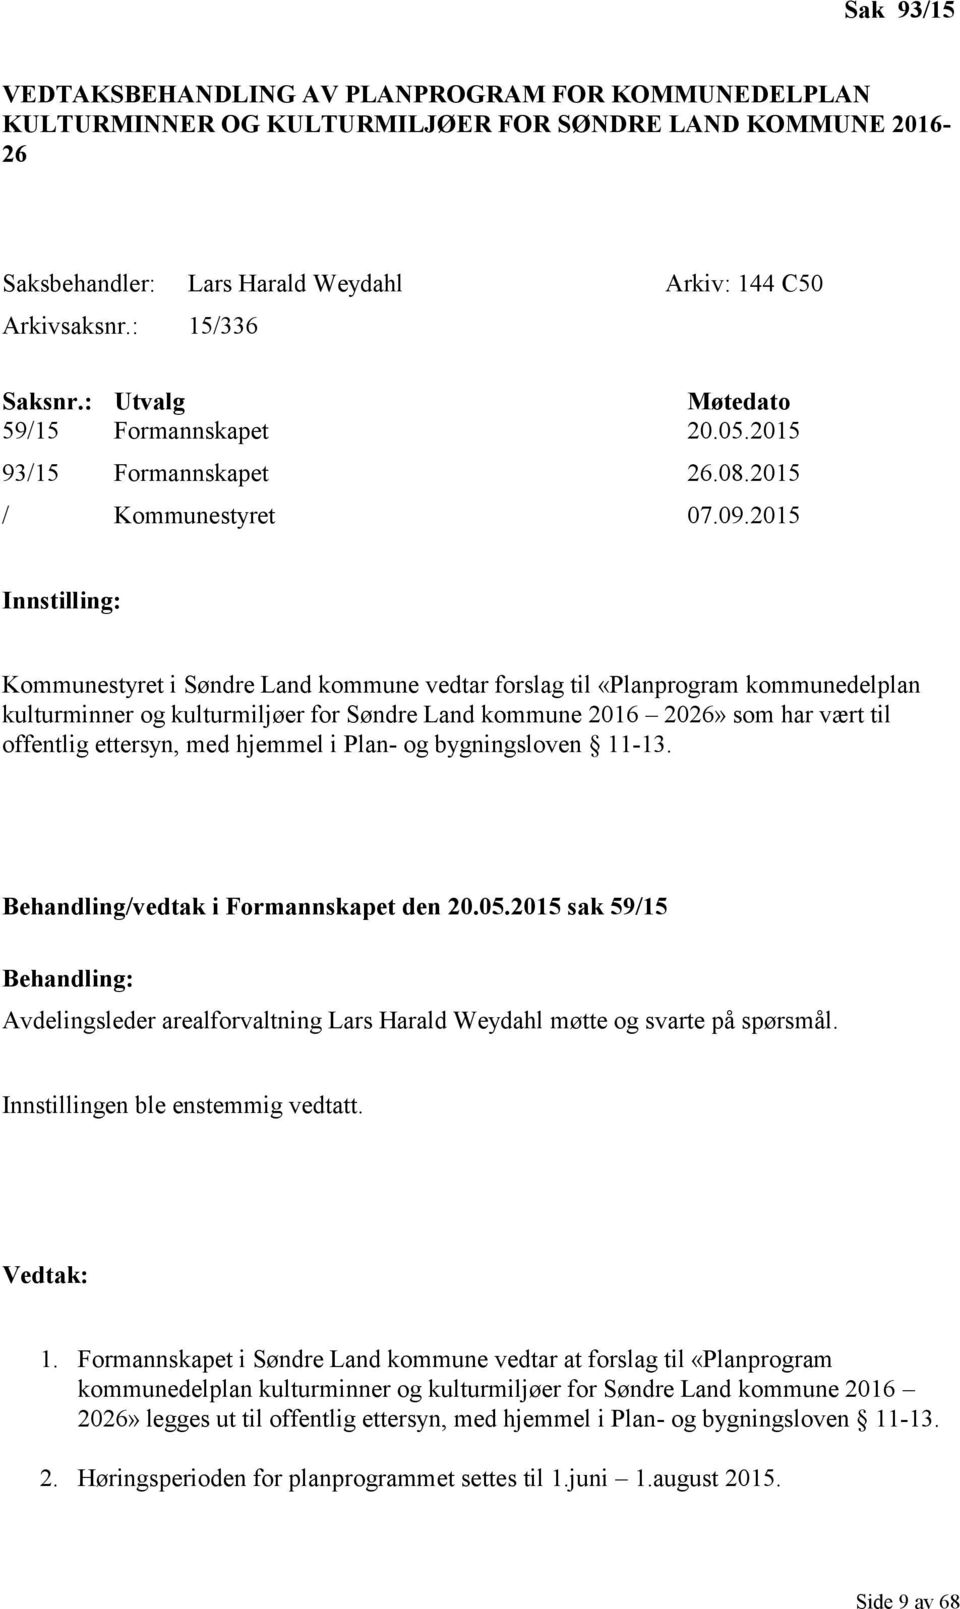 2015 Innstilling: Kommunestyret i Søndre Land kommune vedtar forslag til «Planprogram kommunedelplan kulturminner og kulturmiljøer for Søndre Land kommune 2016 2026» som har vært til offentlig